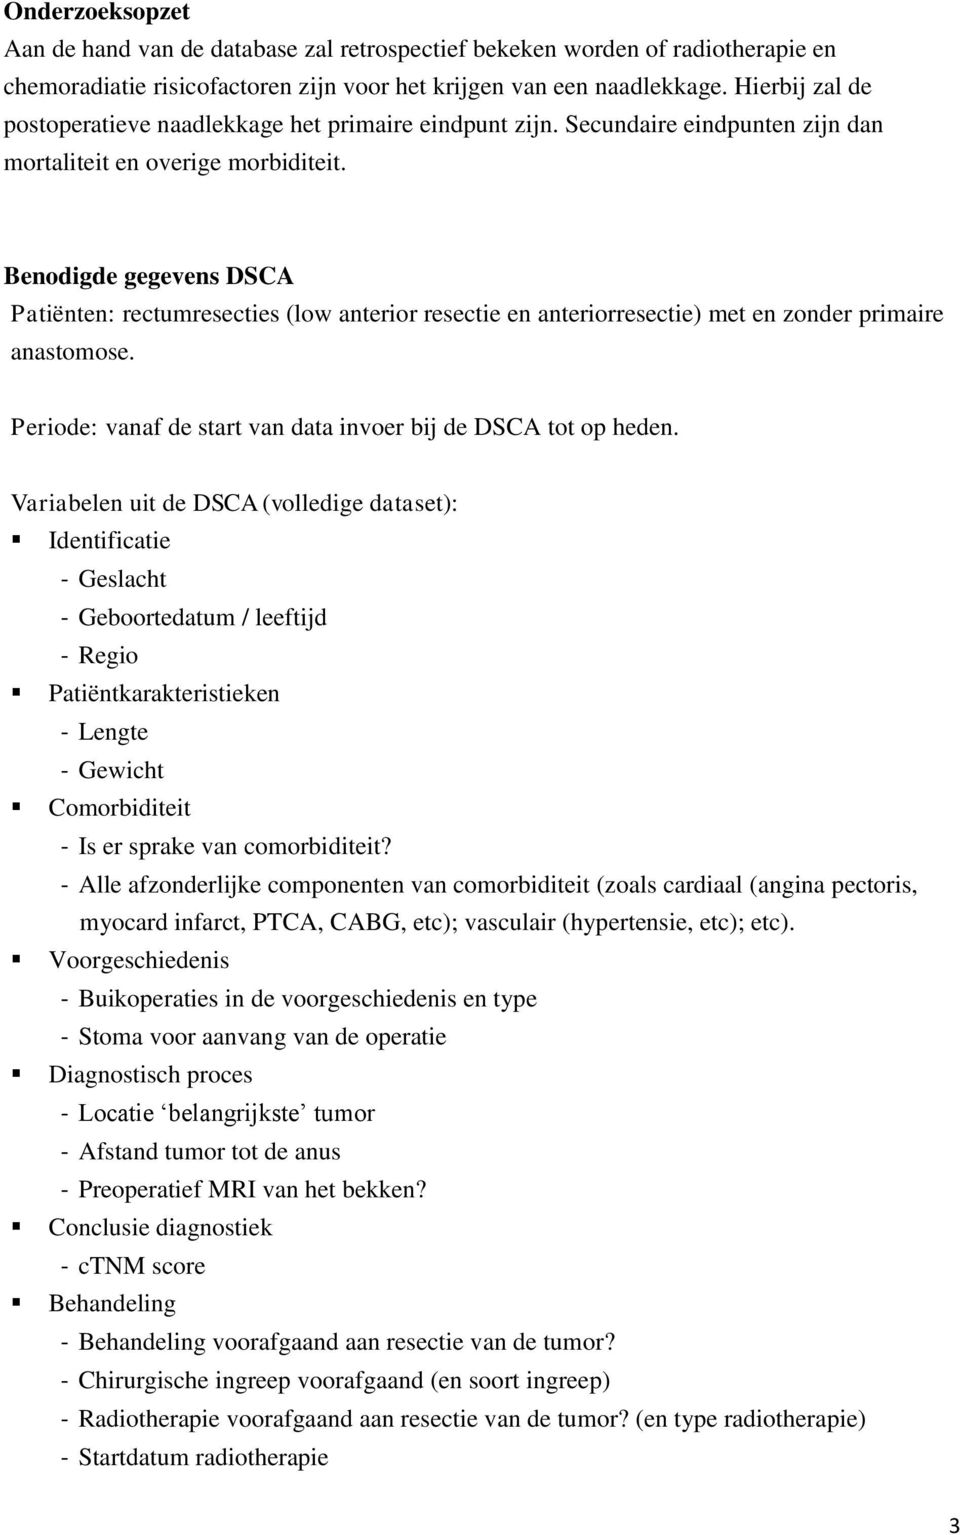 Benodigde gegevens DSCA Patiënten: rectumresecties (low anterior resectie en anteriorresectie) met en zonder primaire anastomose. Periode: vanaf de start van data invoer bij de DSCA tot op heden.